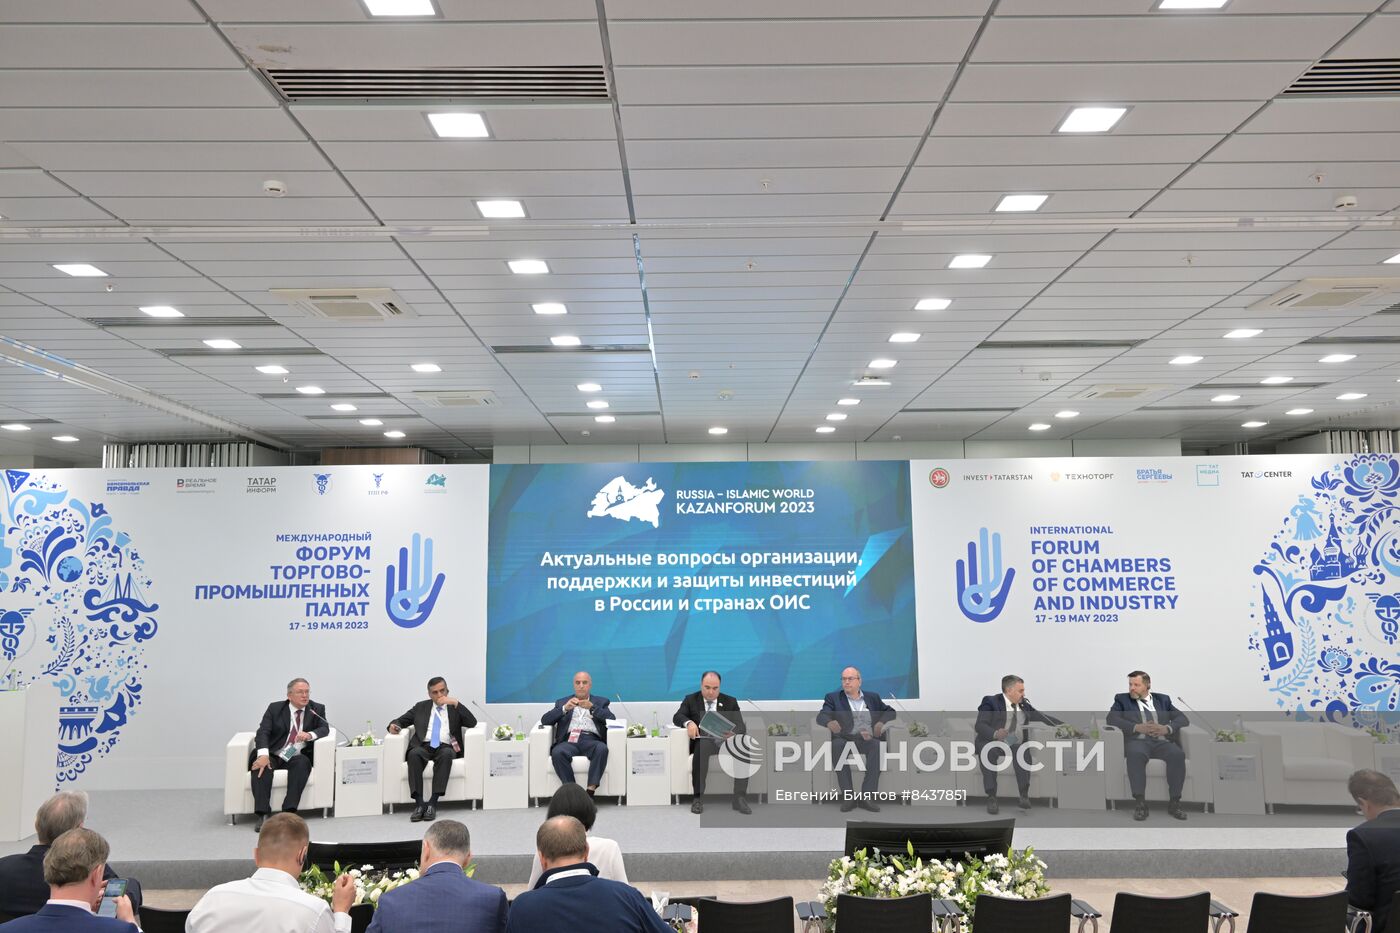 KAZANFORUM 2023. Актуальные вопросы организации, поддержки и защиты инвестиций в России и странах ОИС